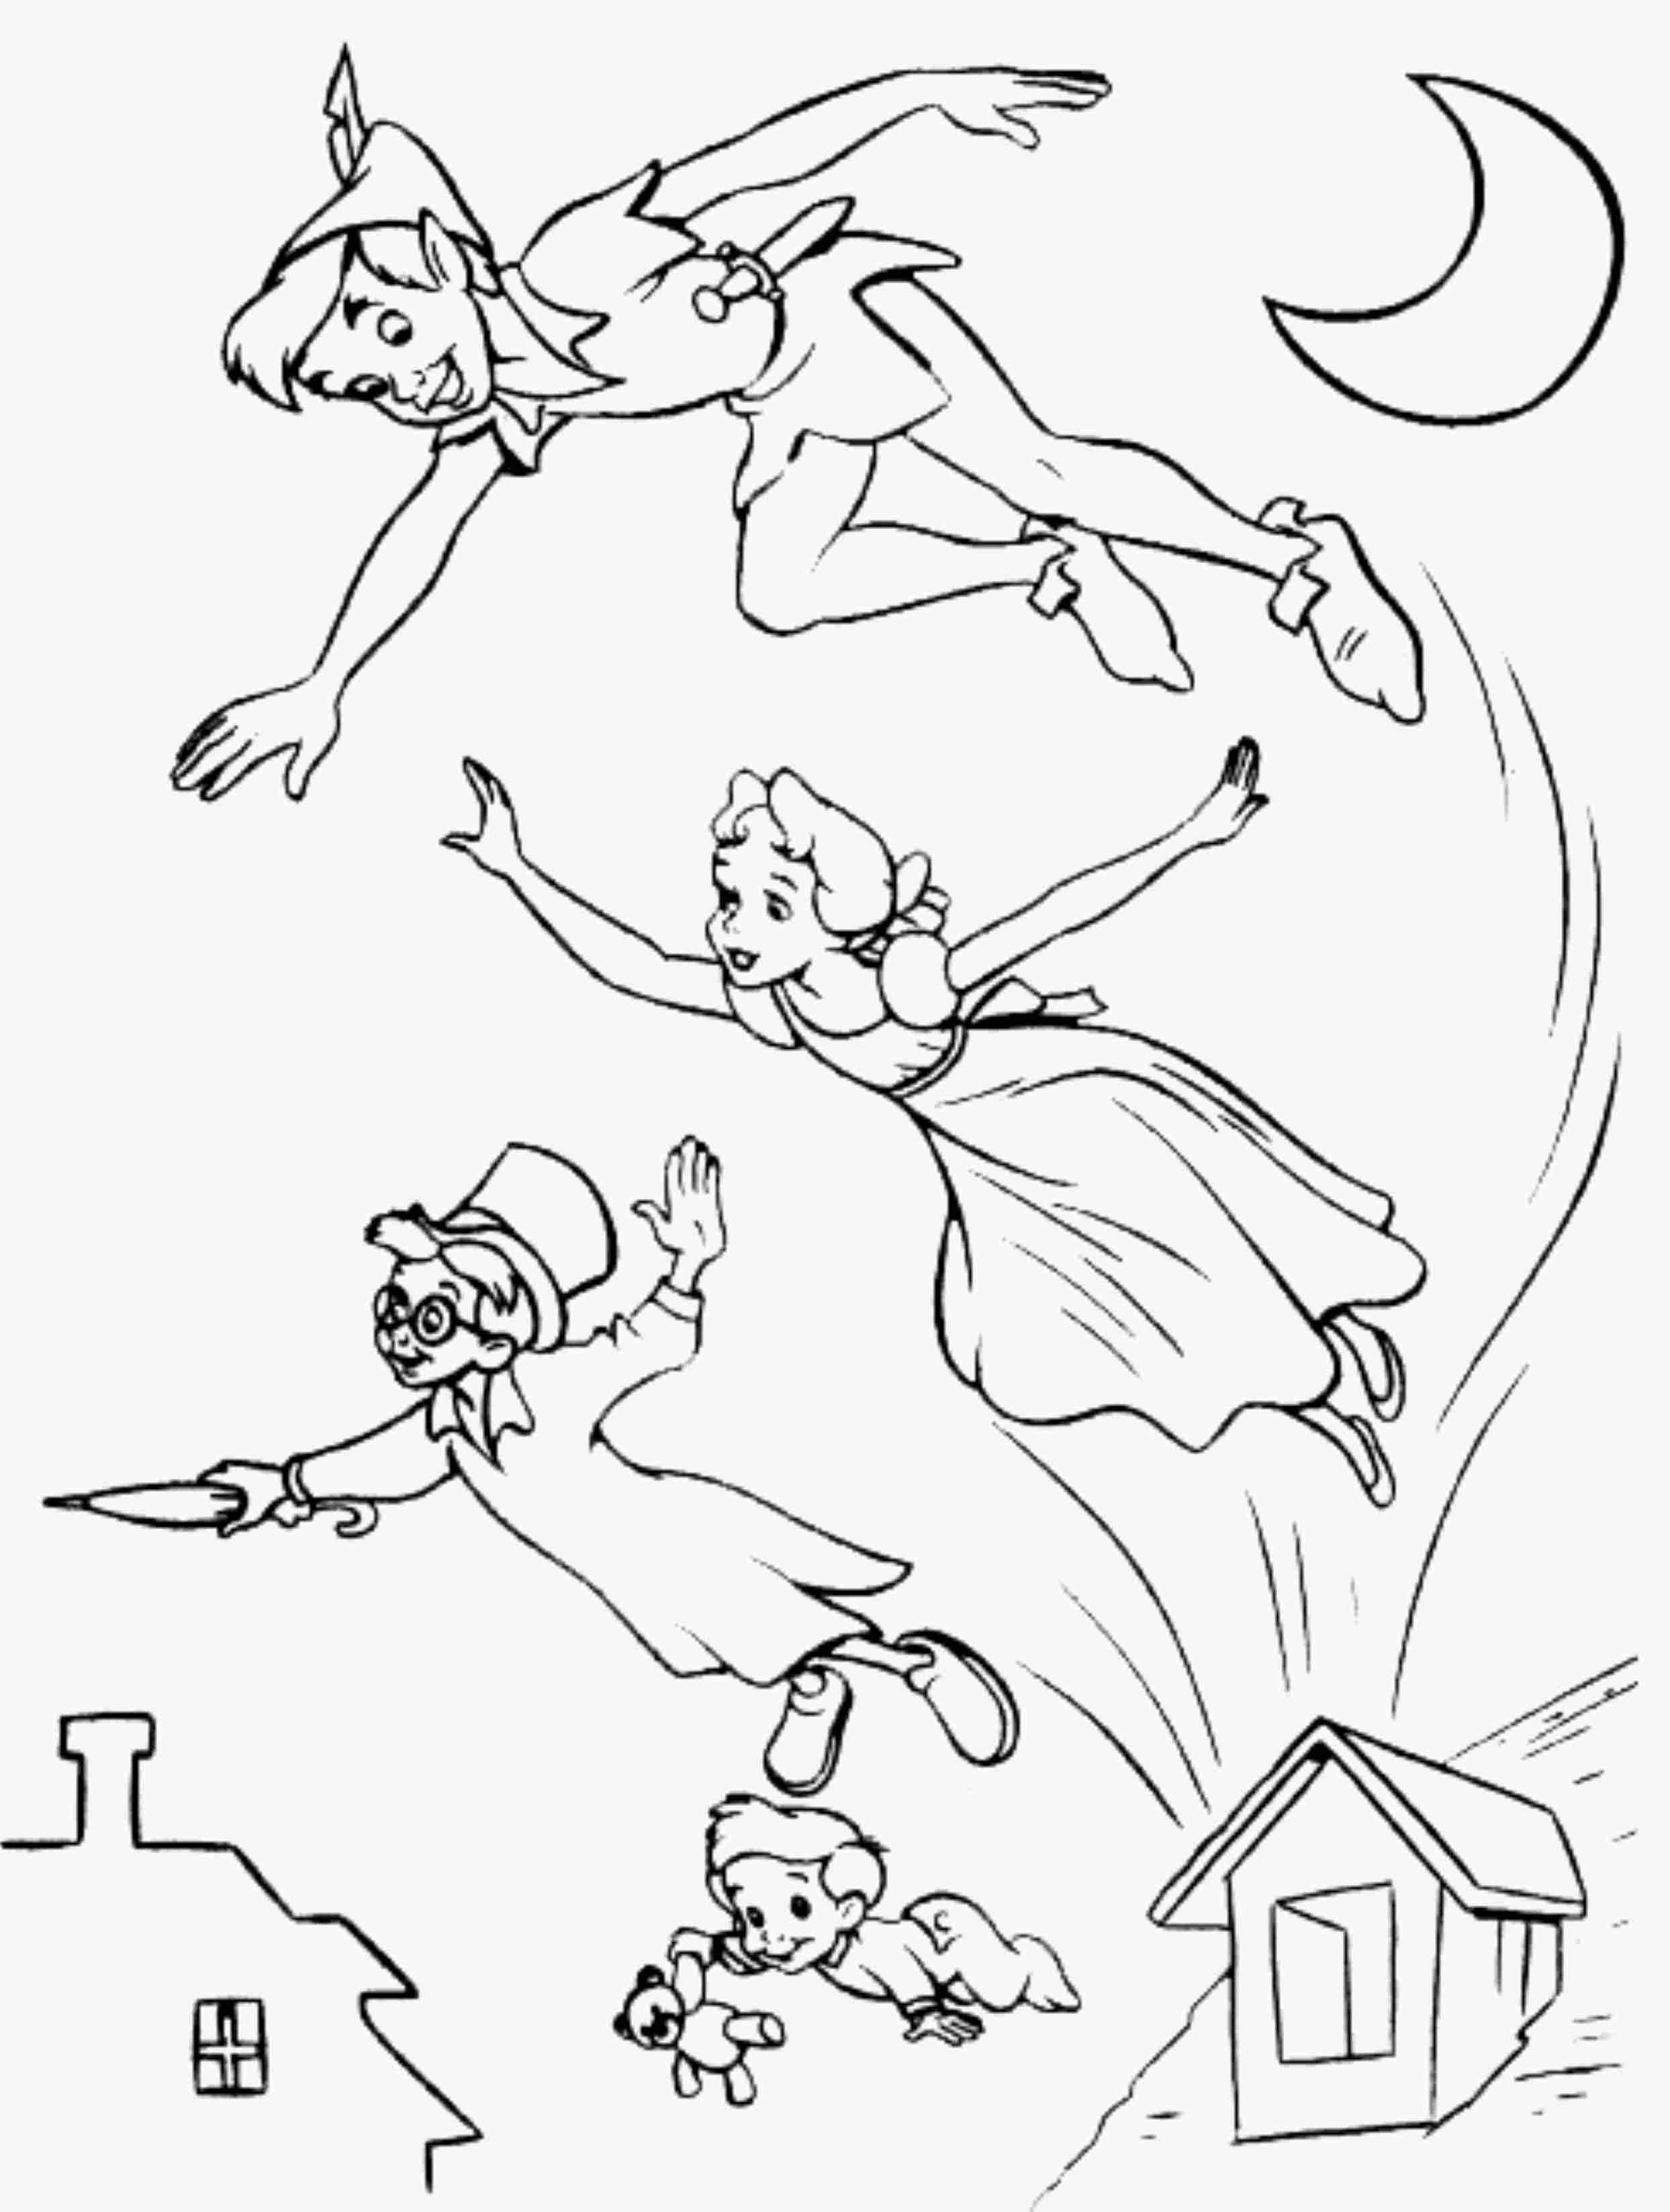 Peter Pan Drawing at GetDrawings | Free download